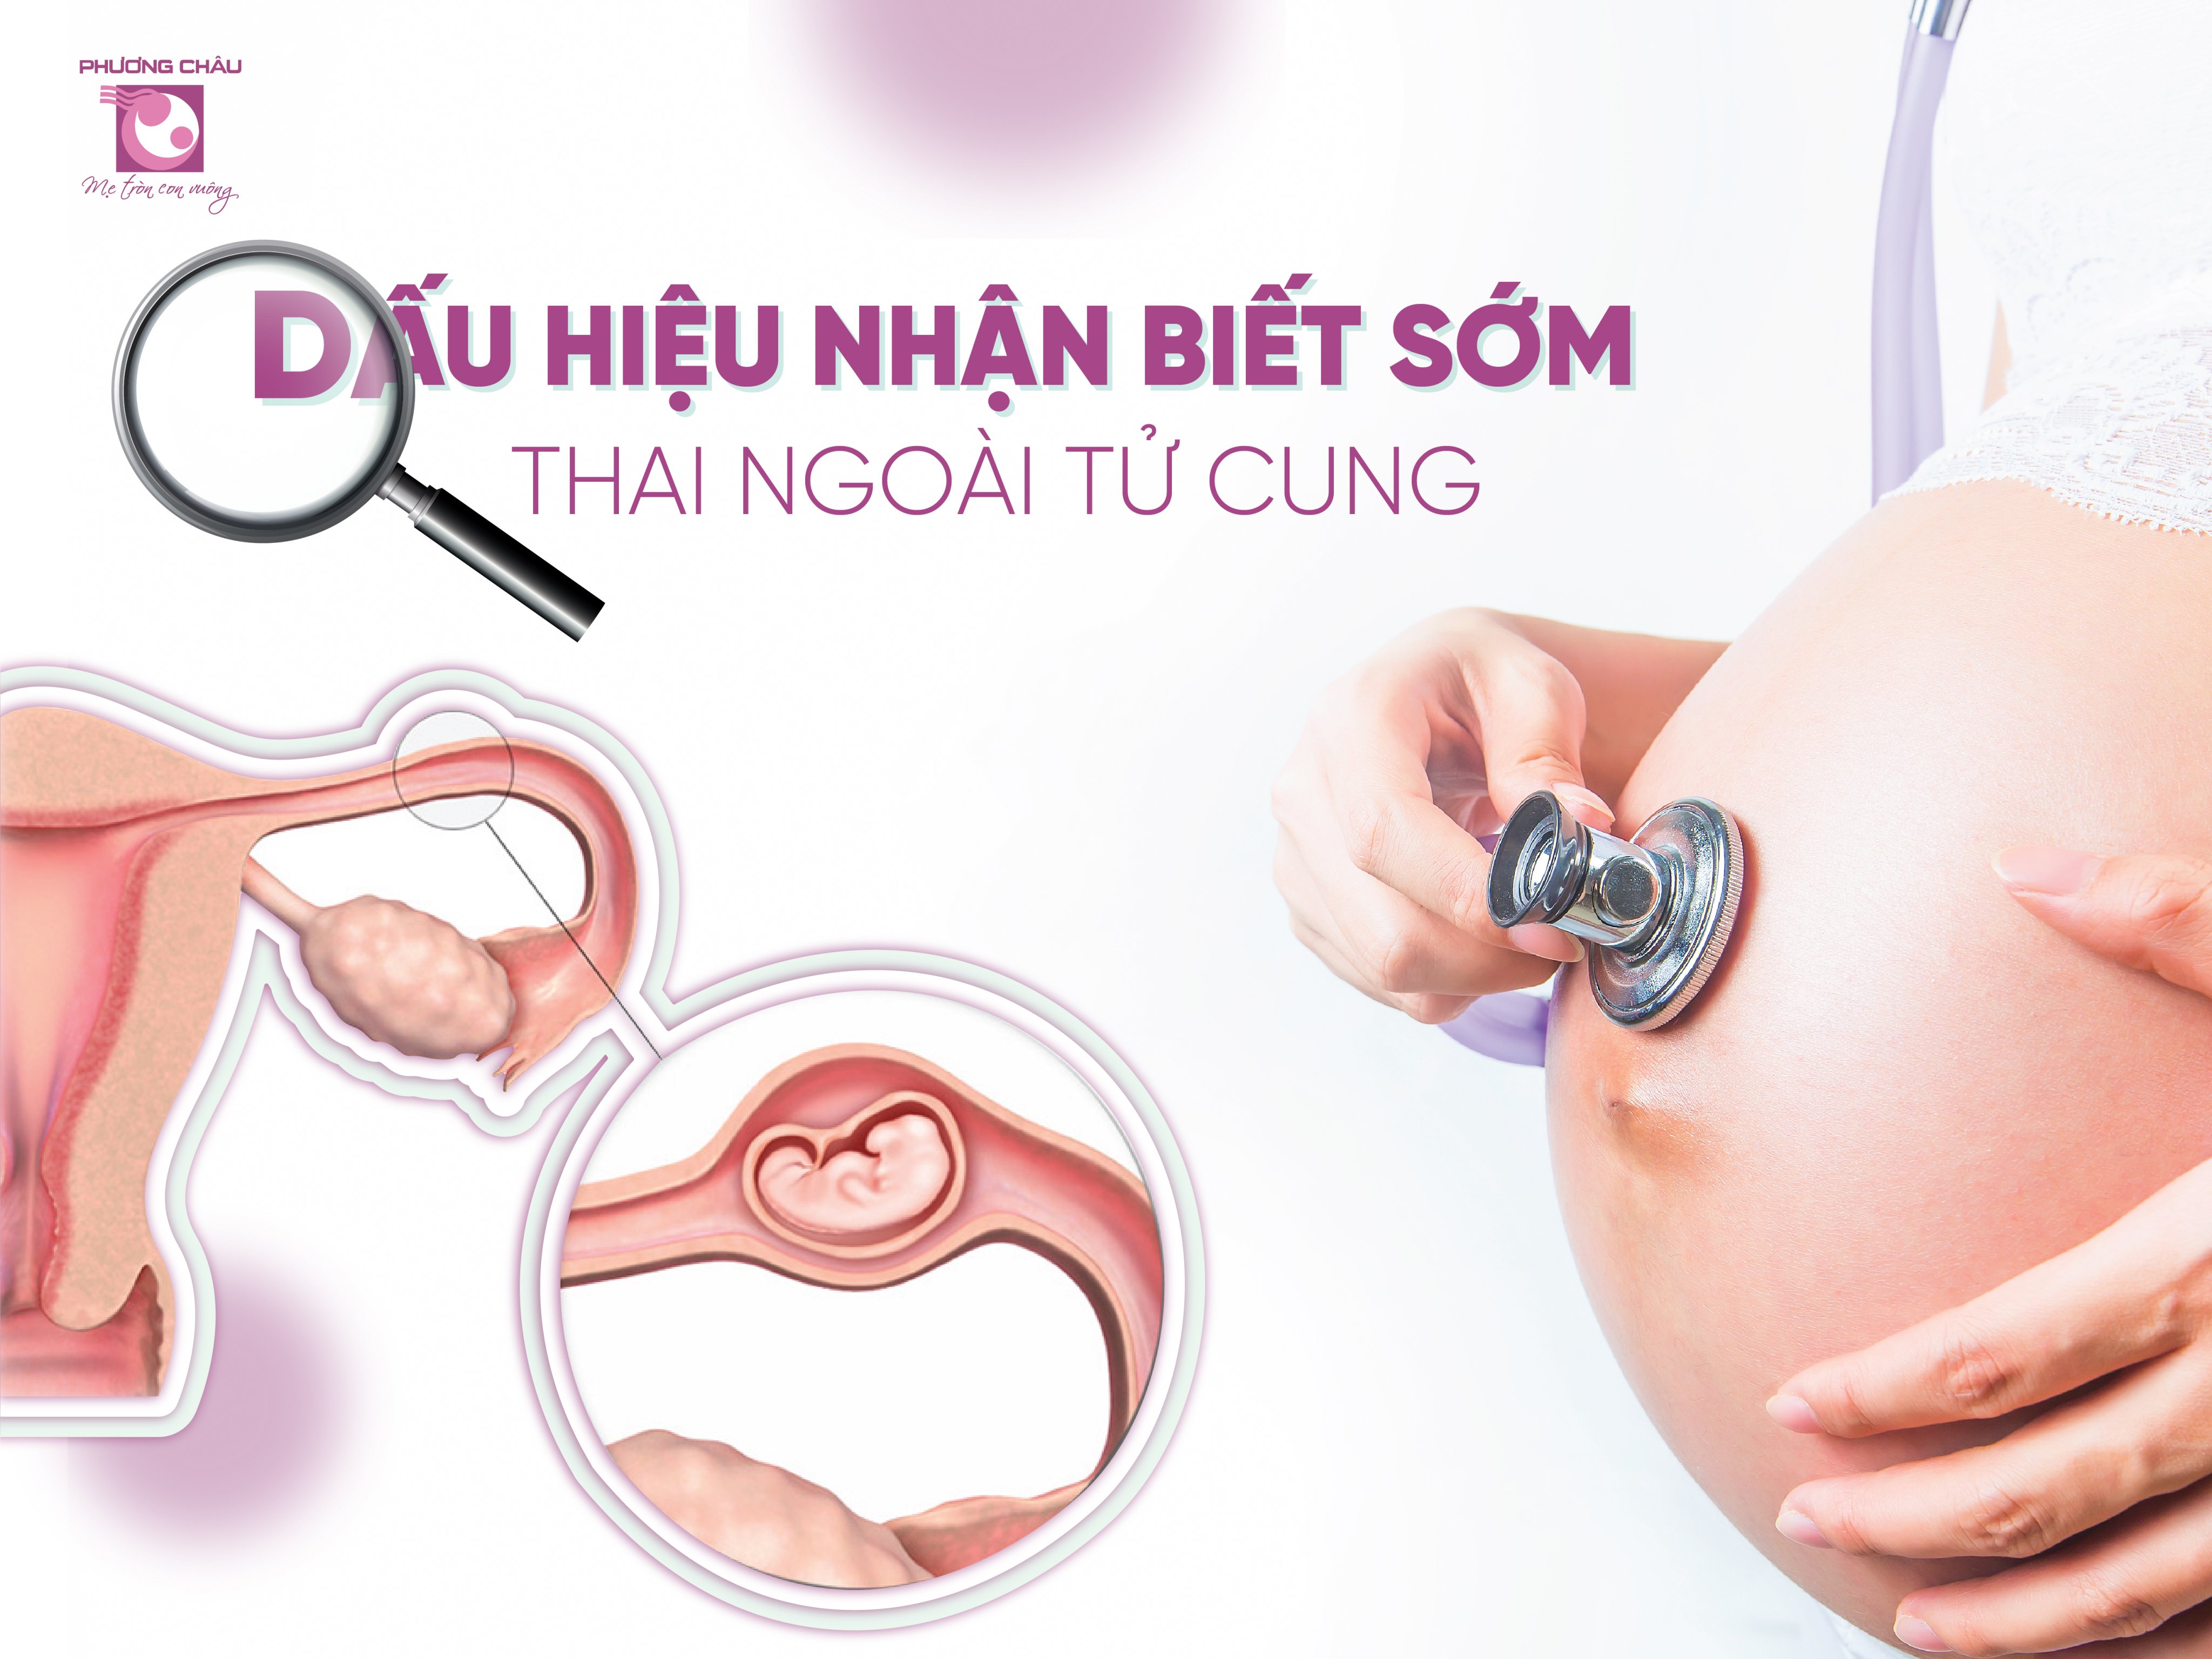 thai ngoài tử cung, chửa ngoài dạ con, dấu hiệu nhận biết, thai ngoài, sớm, tử cung, khám thai